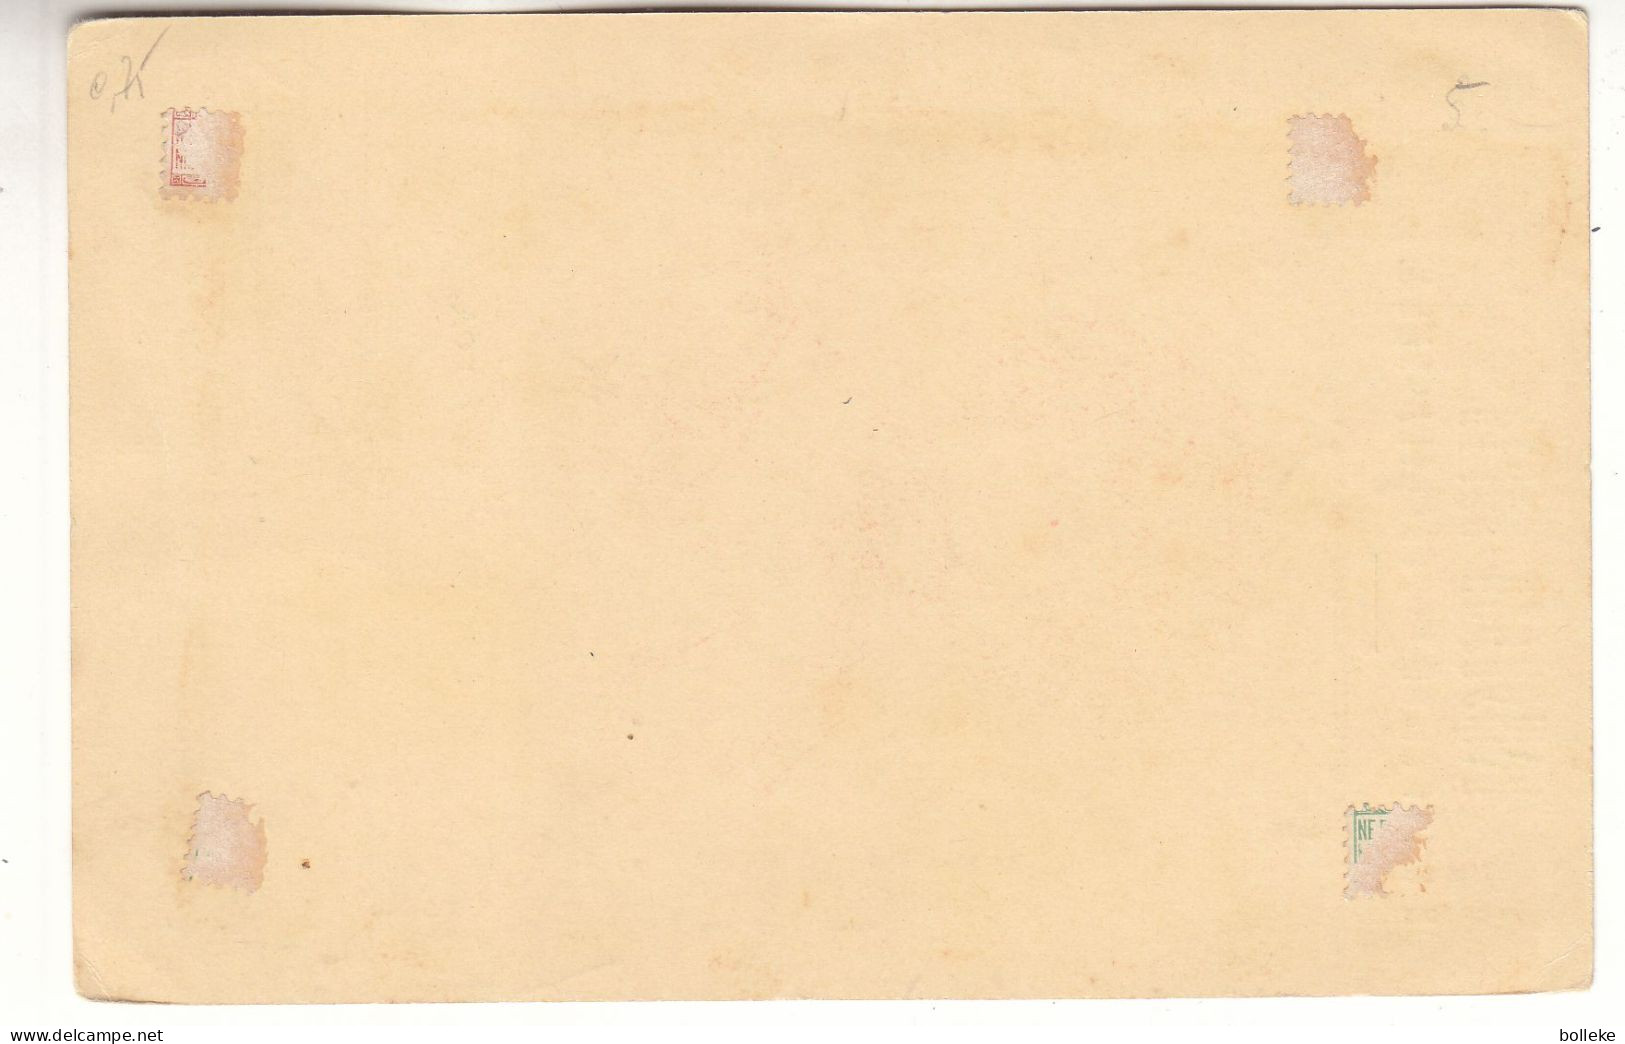 Bulgarie - Carte Postale De 1896 - Entier Postal - - Covers & Documents